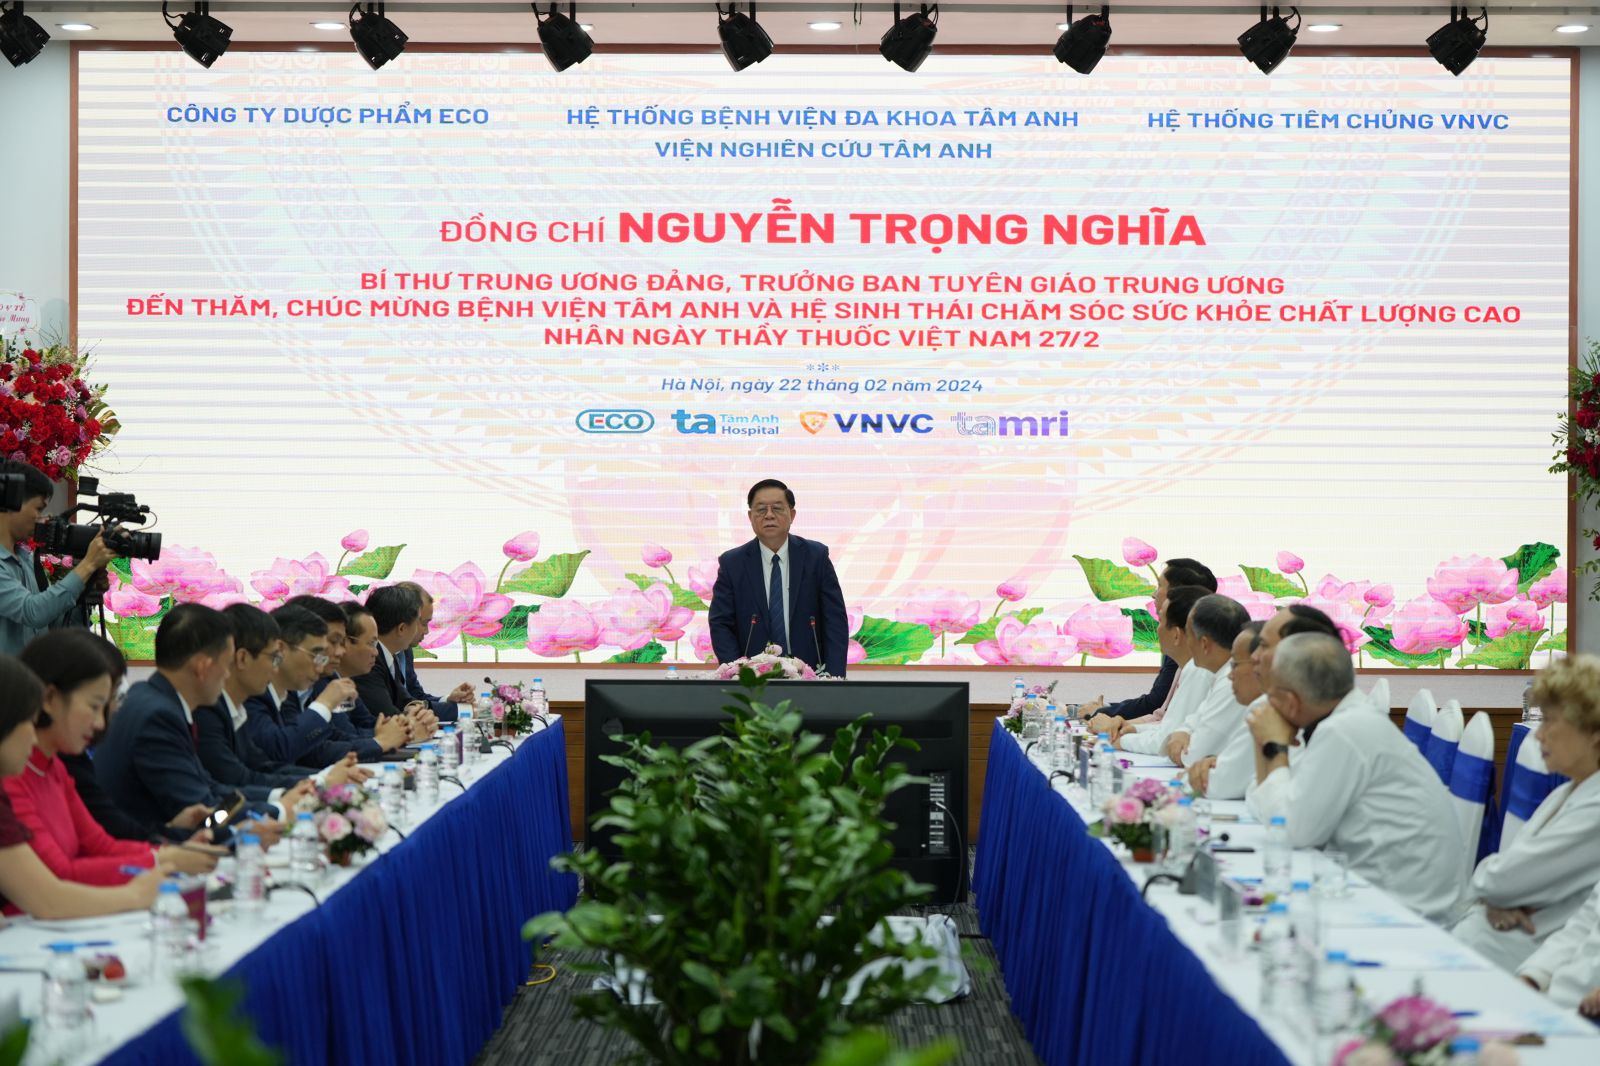 Đồng chí Nguyễn Trọng Nghĩa, Bí thư Trung ương Đảng, Trưởng Ban Tuyên giáo Trung ương phát biểu trong chuyến thăm.